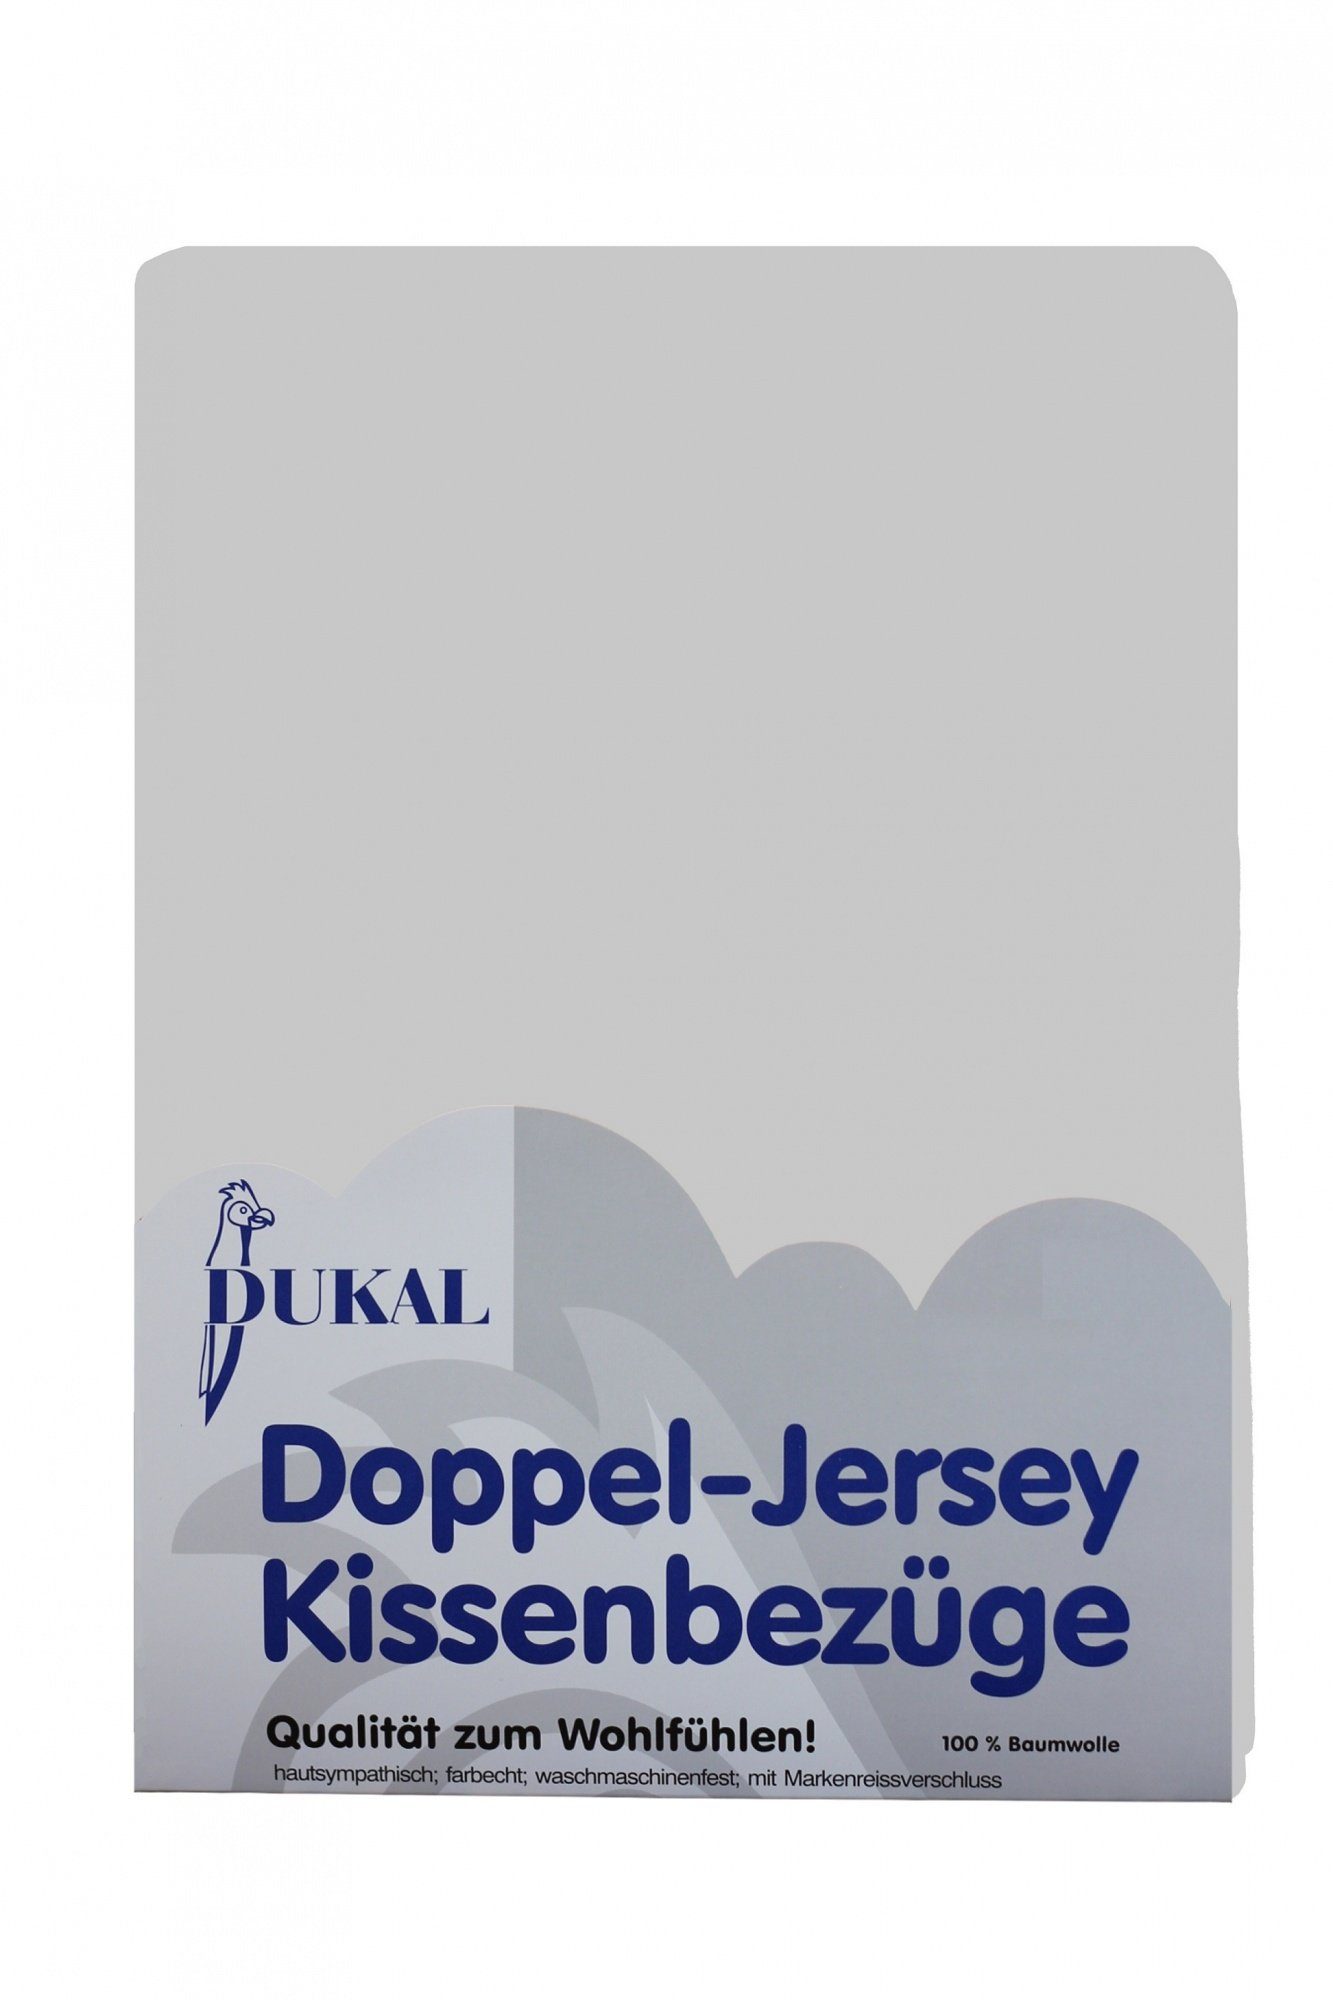 Kissenbezüge aus hochwertigem Doppel-Jersey, 100% Baumwolle, DUKAL (1 Stück), 40x60 cm, mit Reißverschluss, Made in Germany